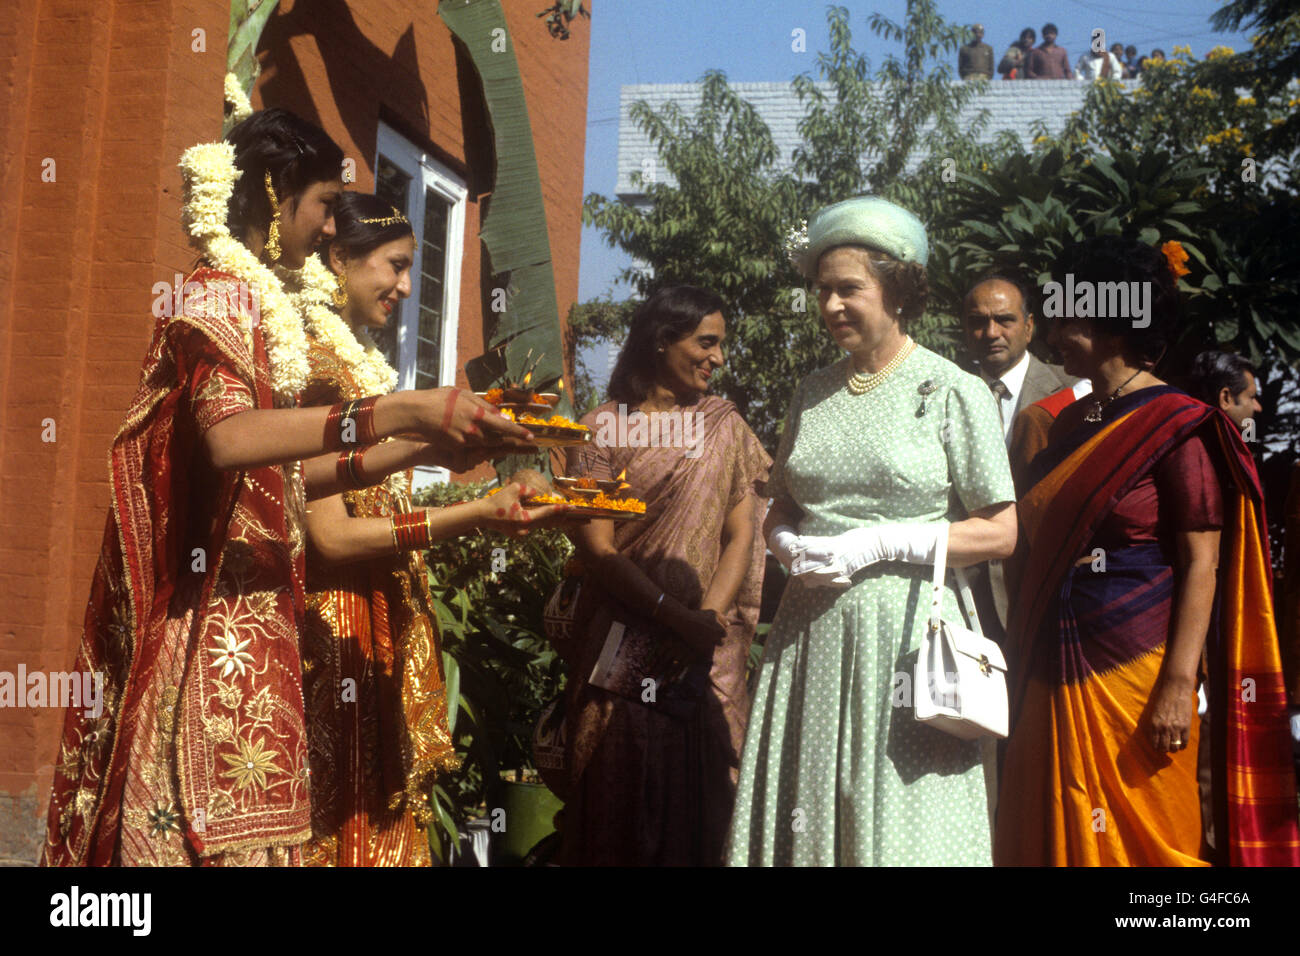 La Reina es ofrecida comida por las niñas con ropa tradicional India en el Mahatma Gandhi Memorial en Raj Ghat, Delhi. Gandhi fue cremado aquí después de su asesinato. Esta fue la segunda visita de la Reina al sitio, la primera fue en 1961 cuando plantó un árbol. Foto de stock